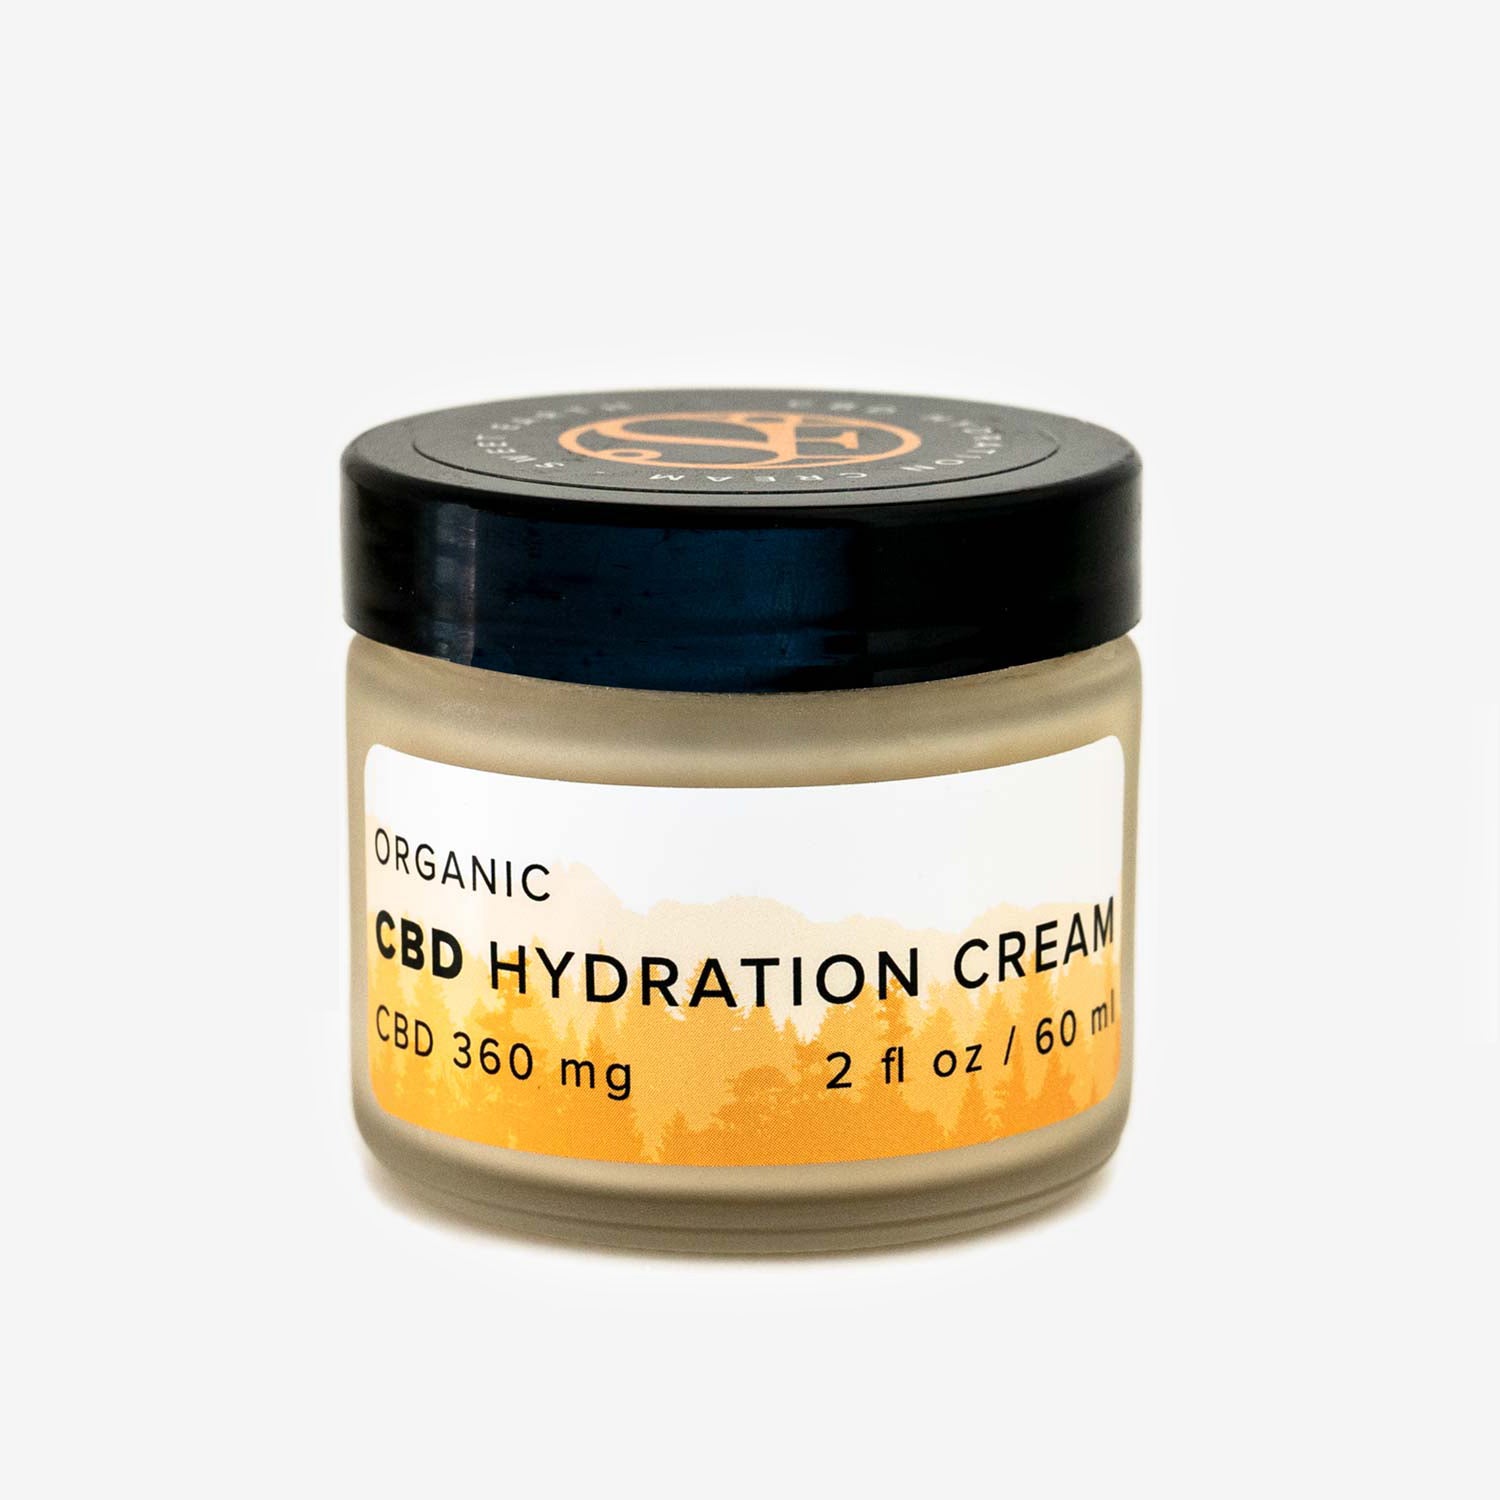 Organic CBD Hydration Cream